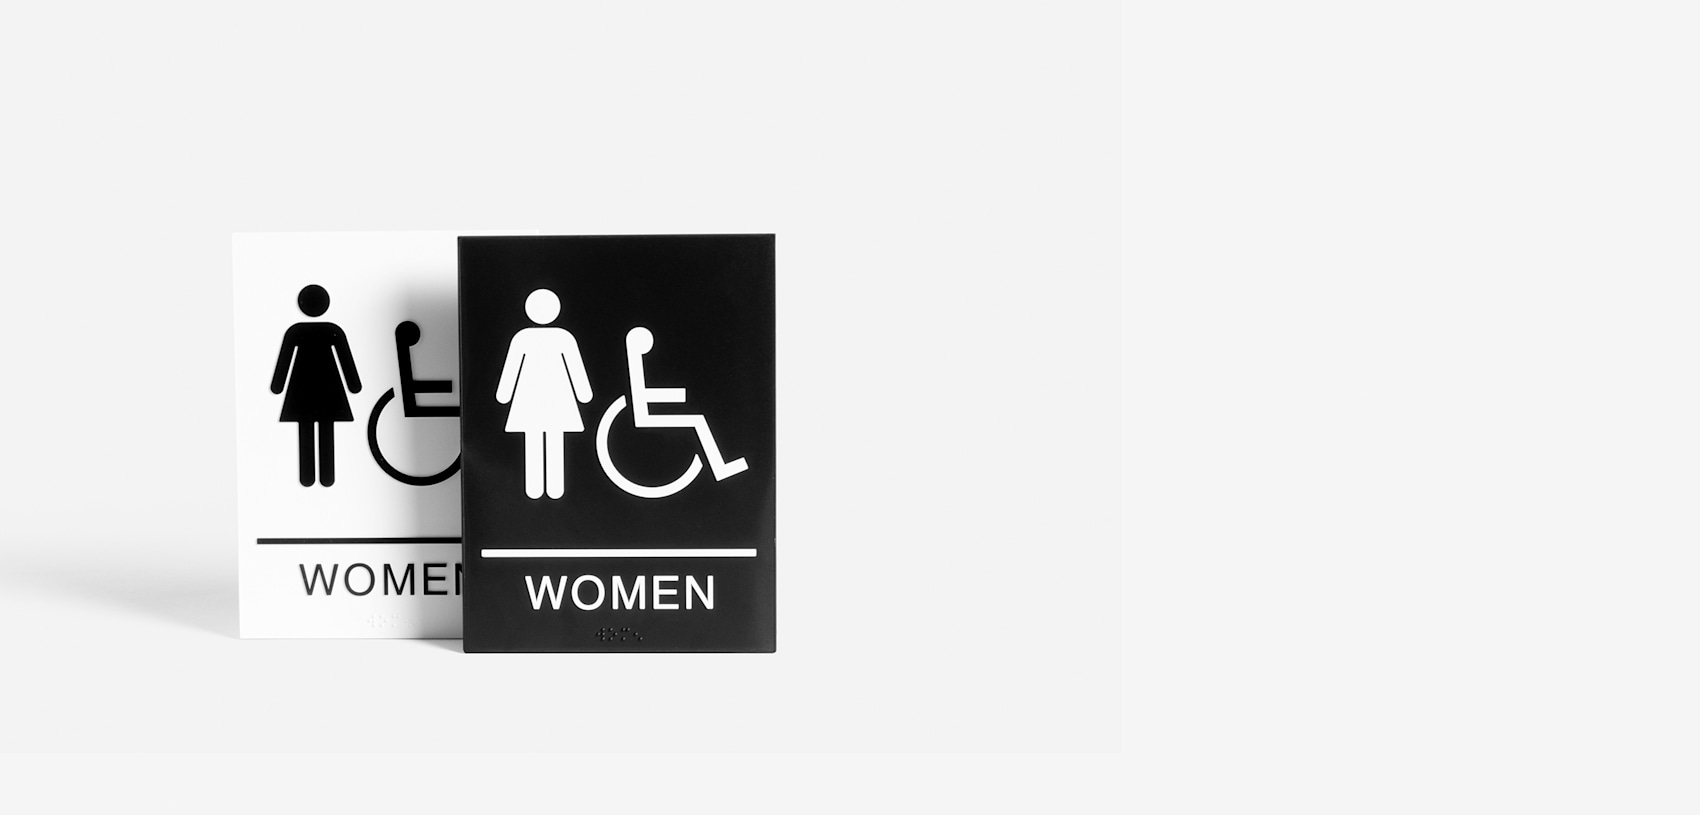 Larger version: washroom signs